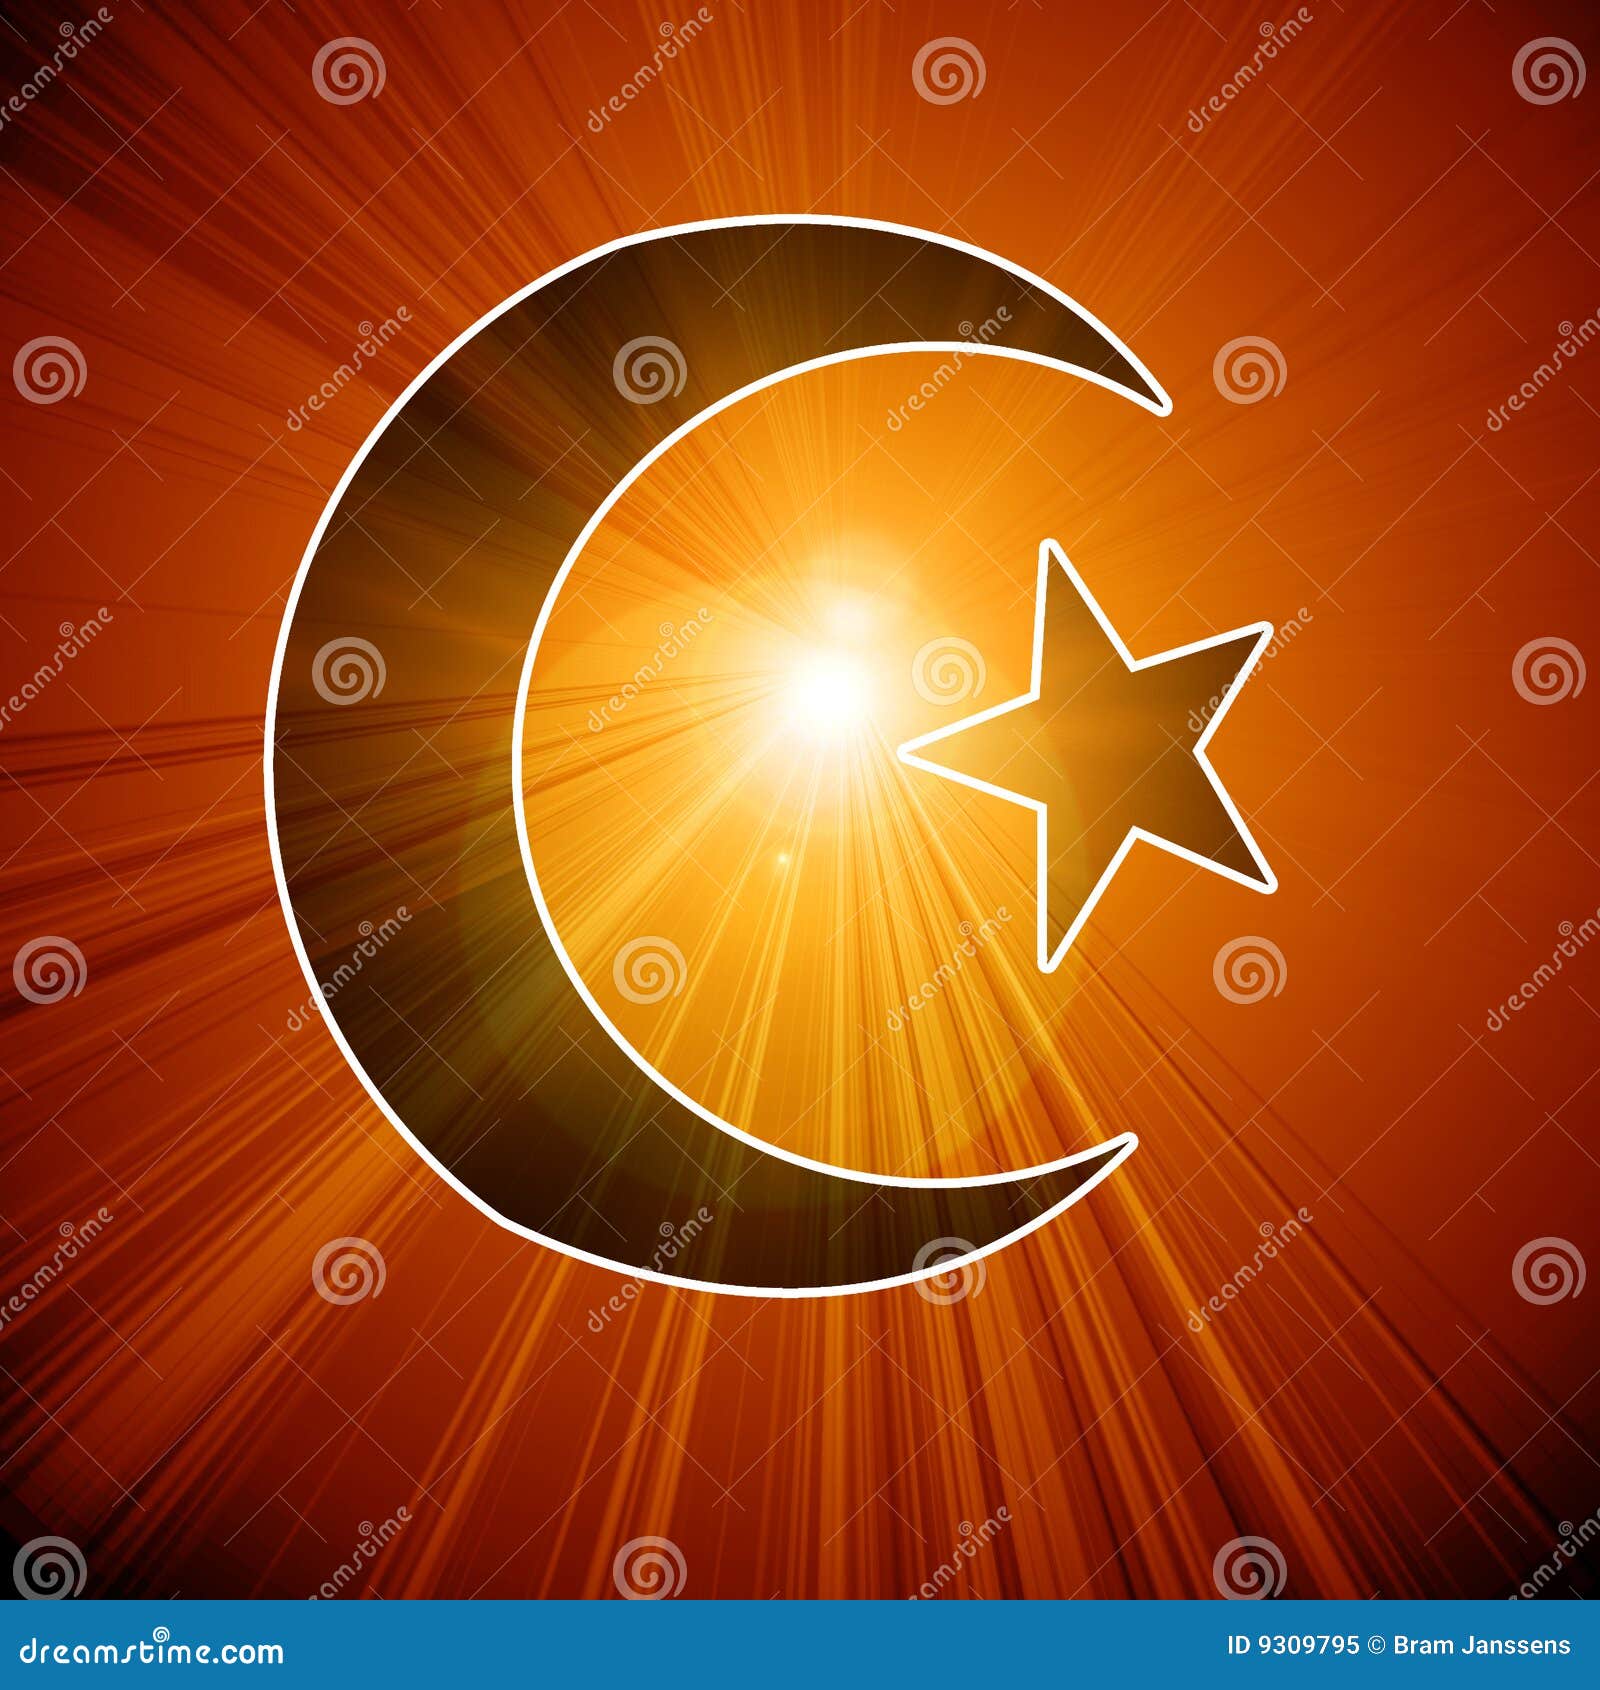 Islamic Symbol Royalty Free Stock Photo - Image: 9309795